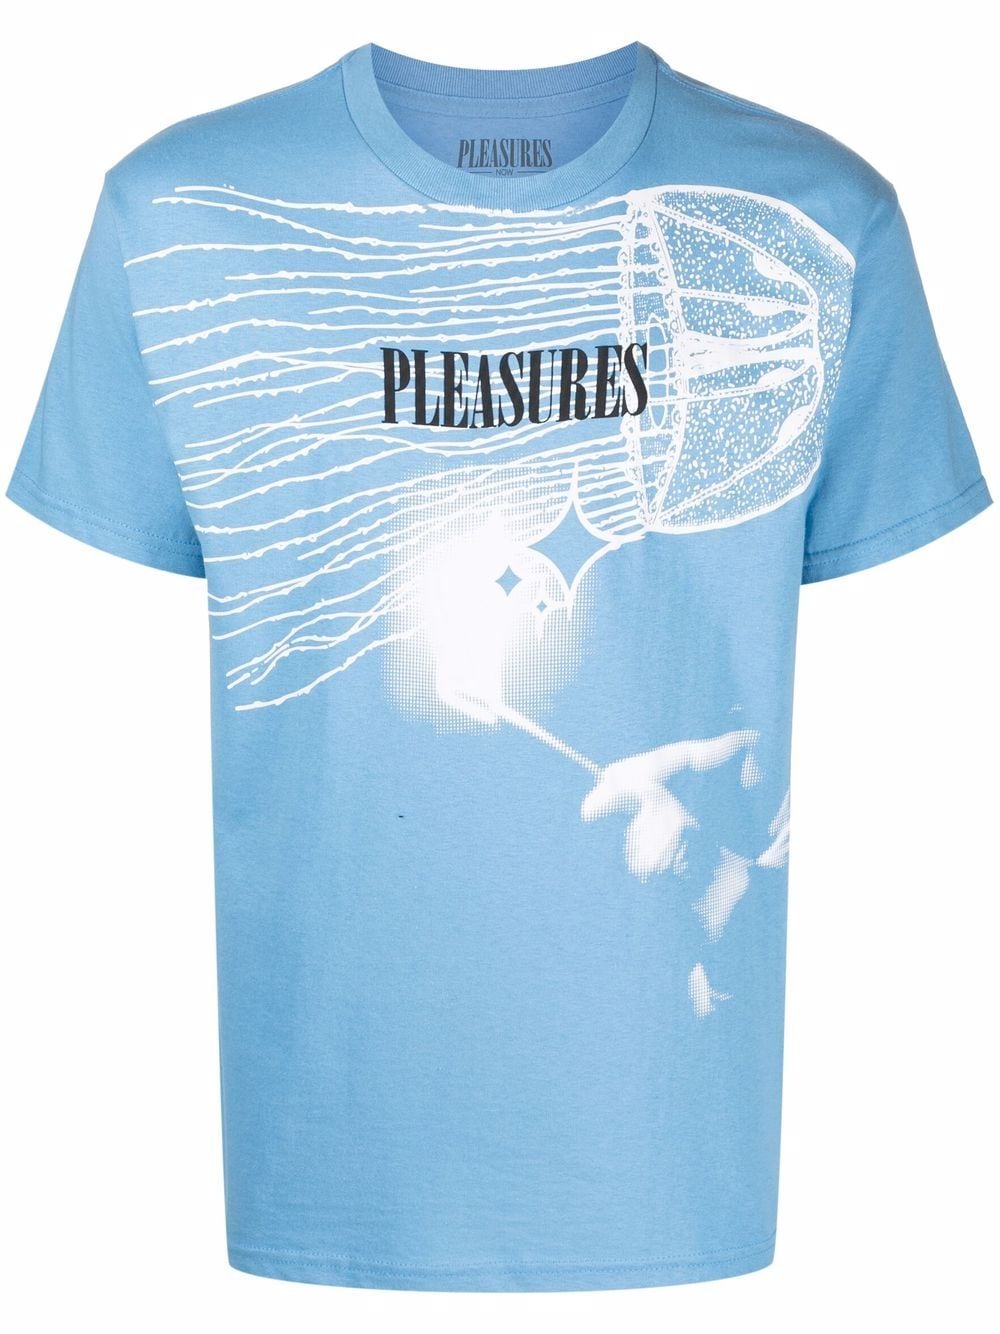 фото Pleasures футболка с логотипом